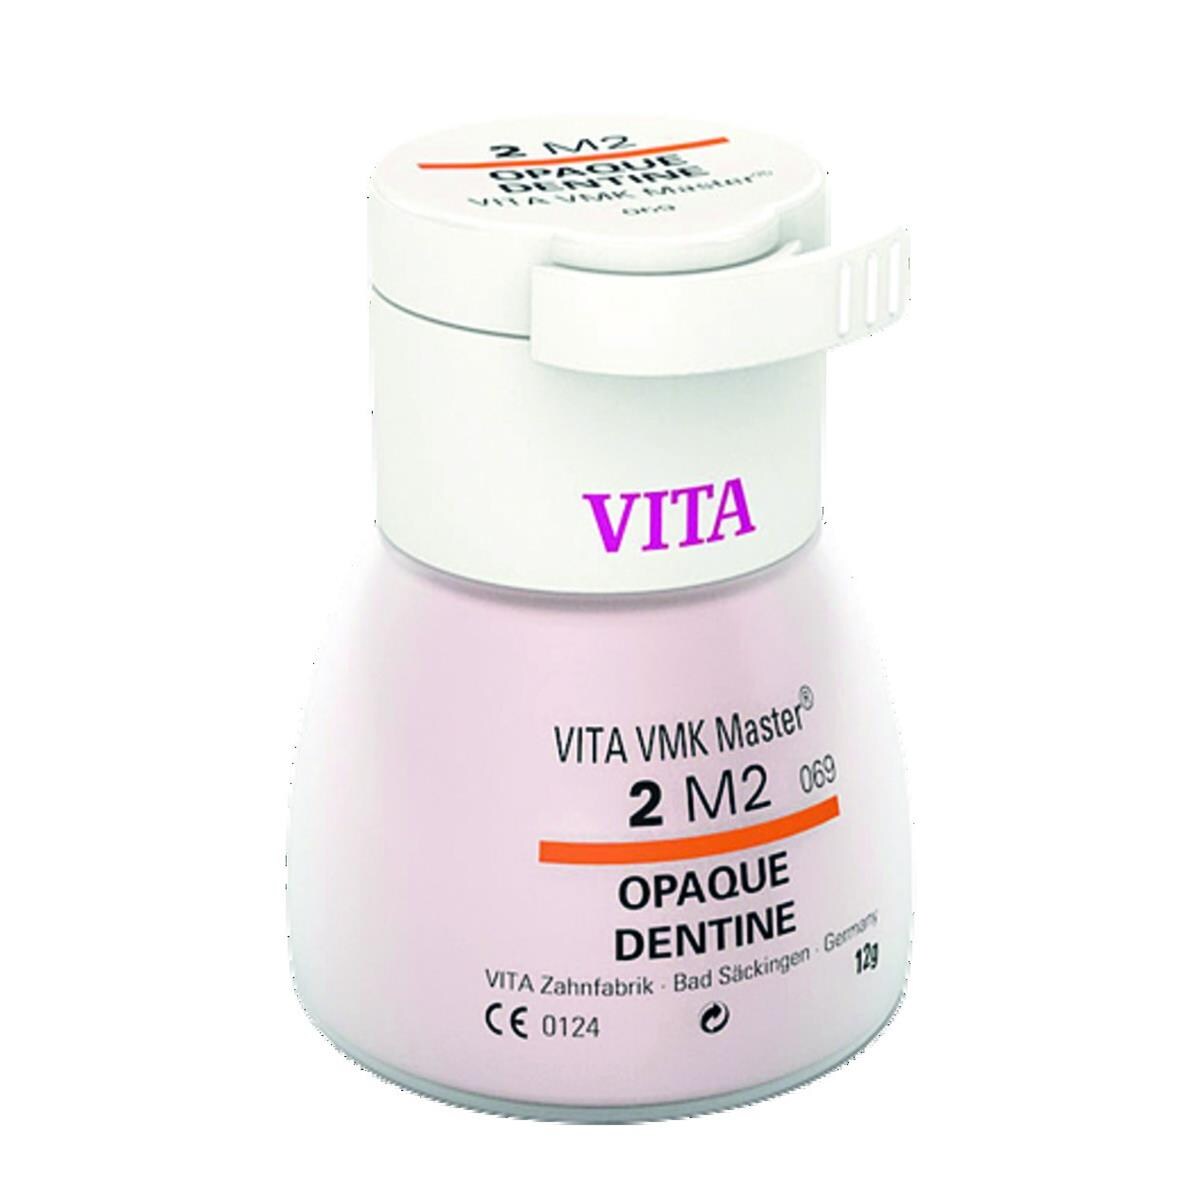 VMK Master VITA - Dentine Opaque - 2L1,5 - Le flacon de 12 g